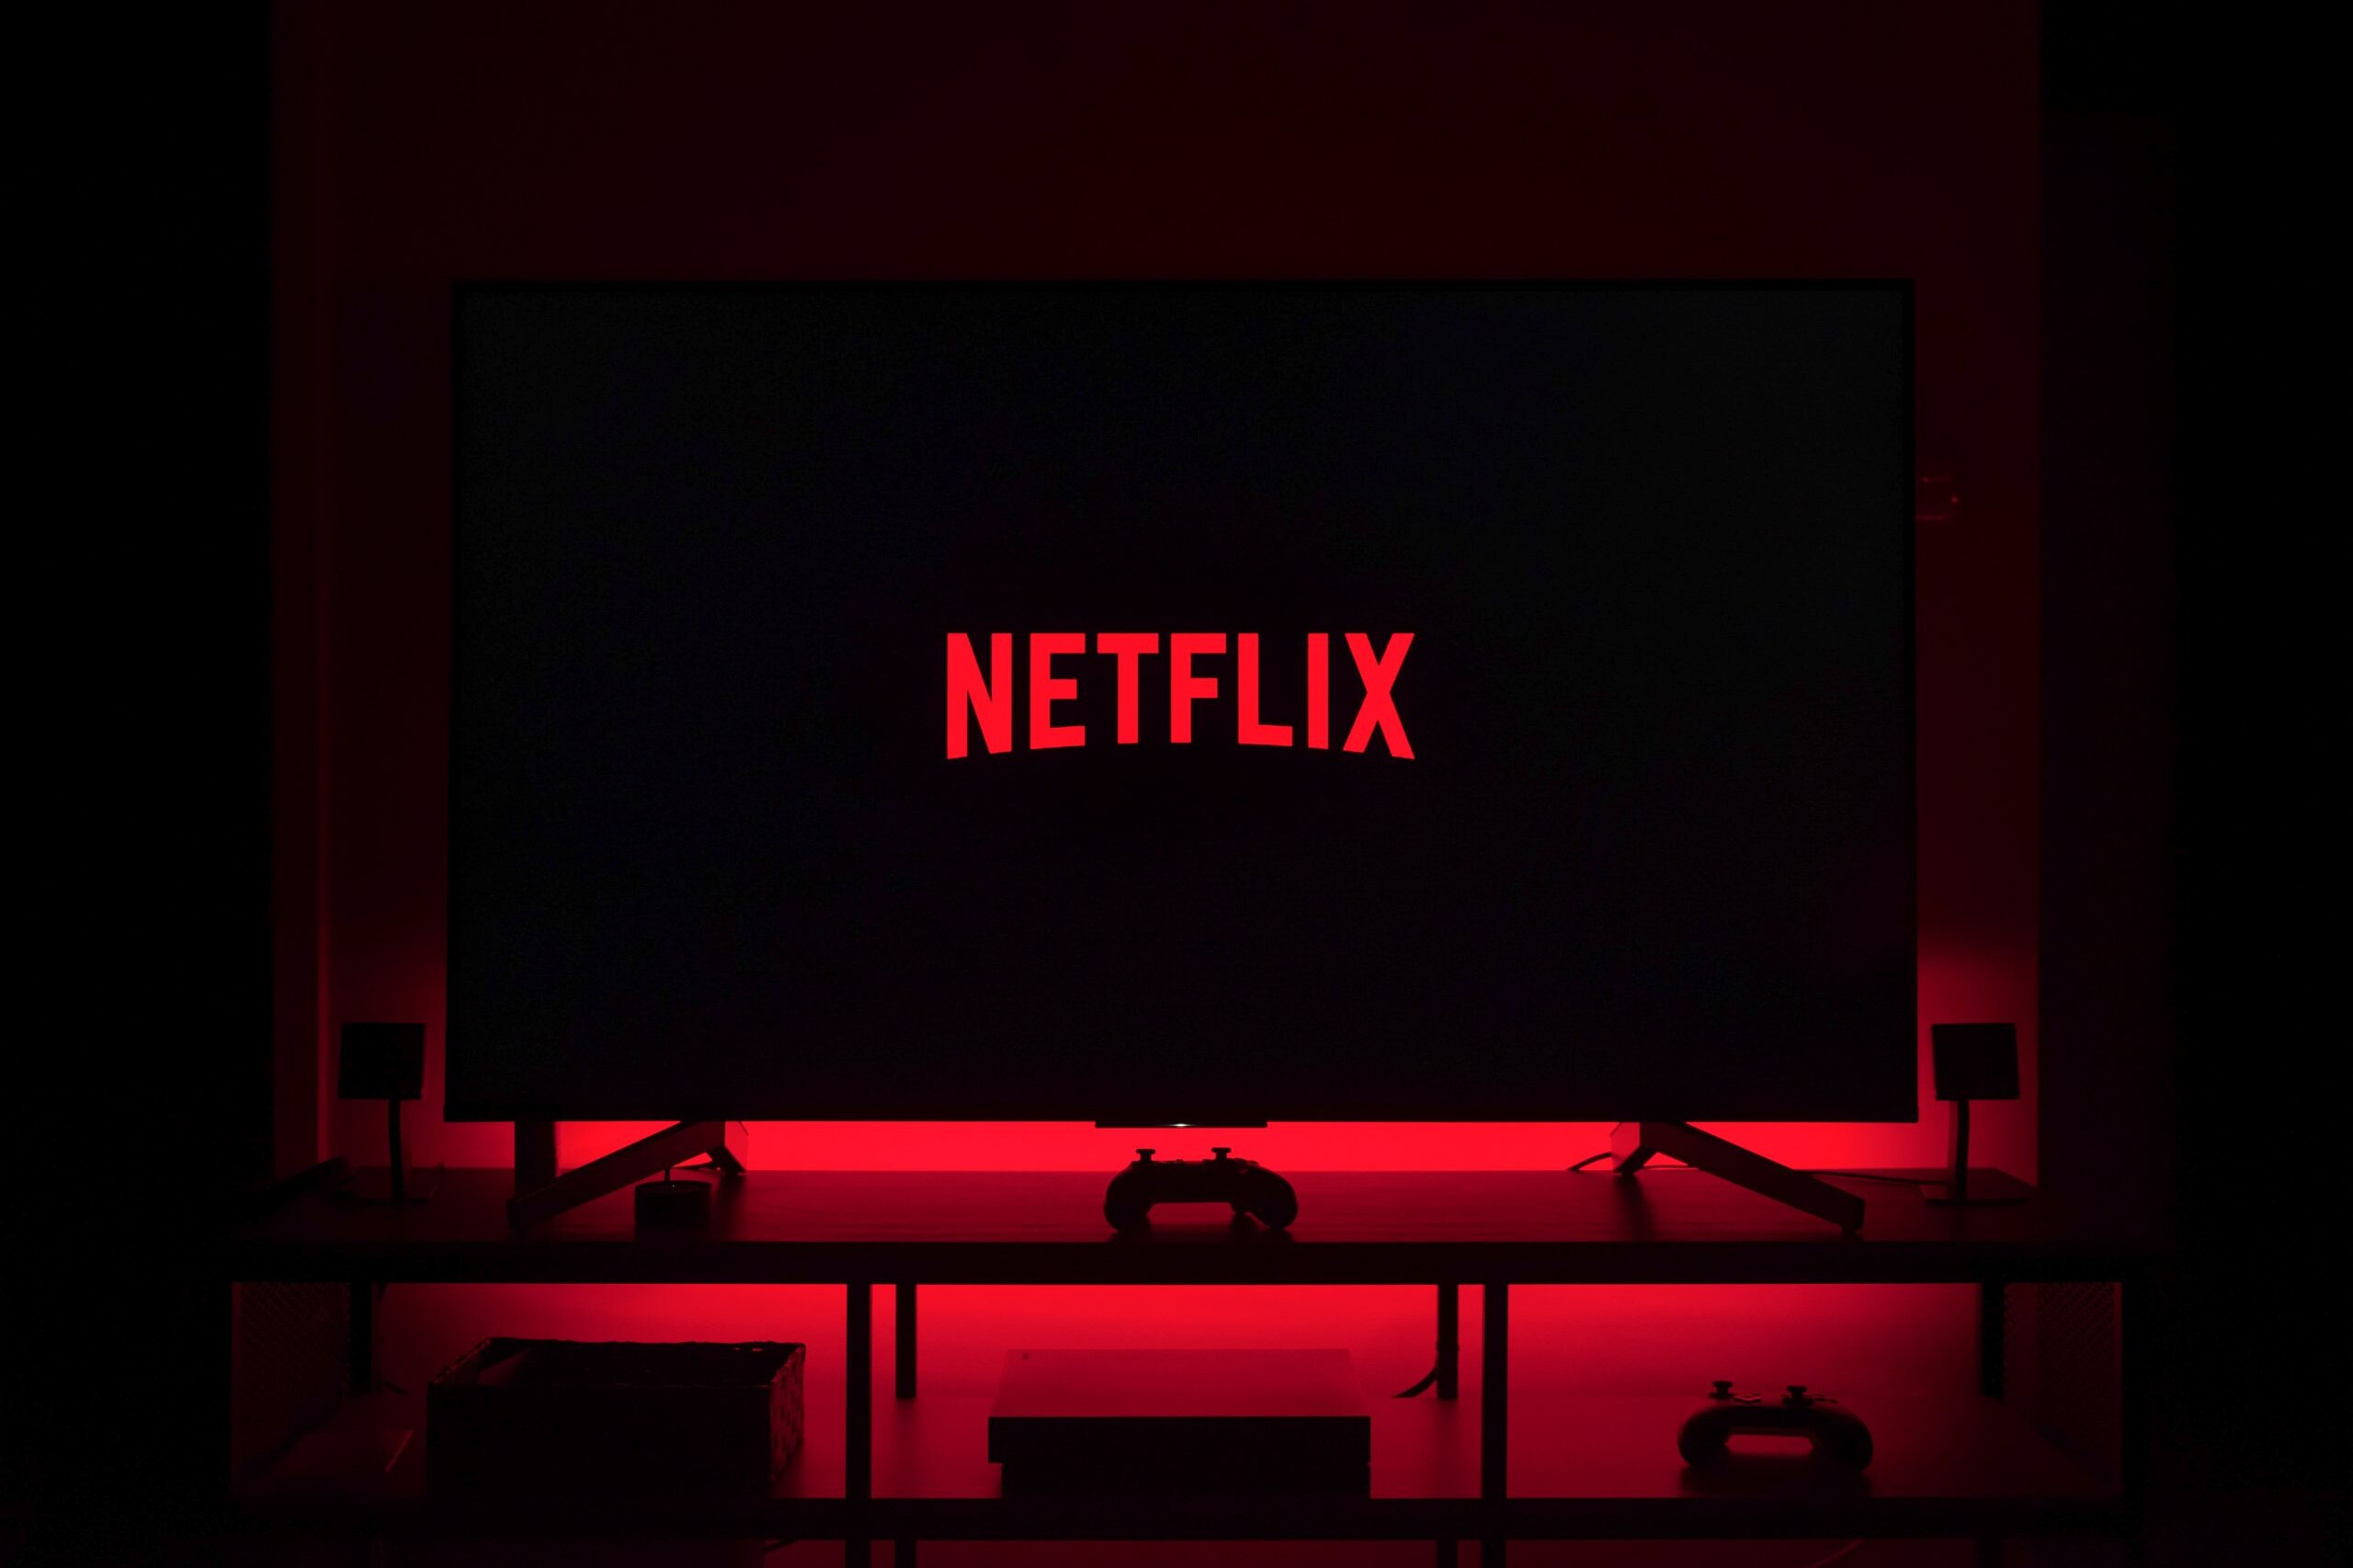 Netflix on a TV